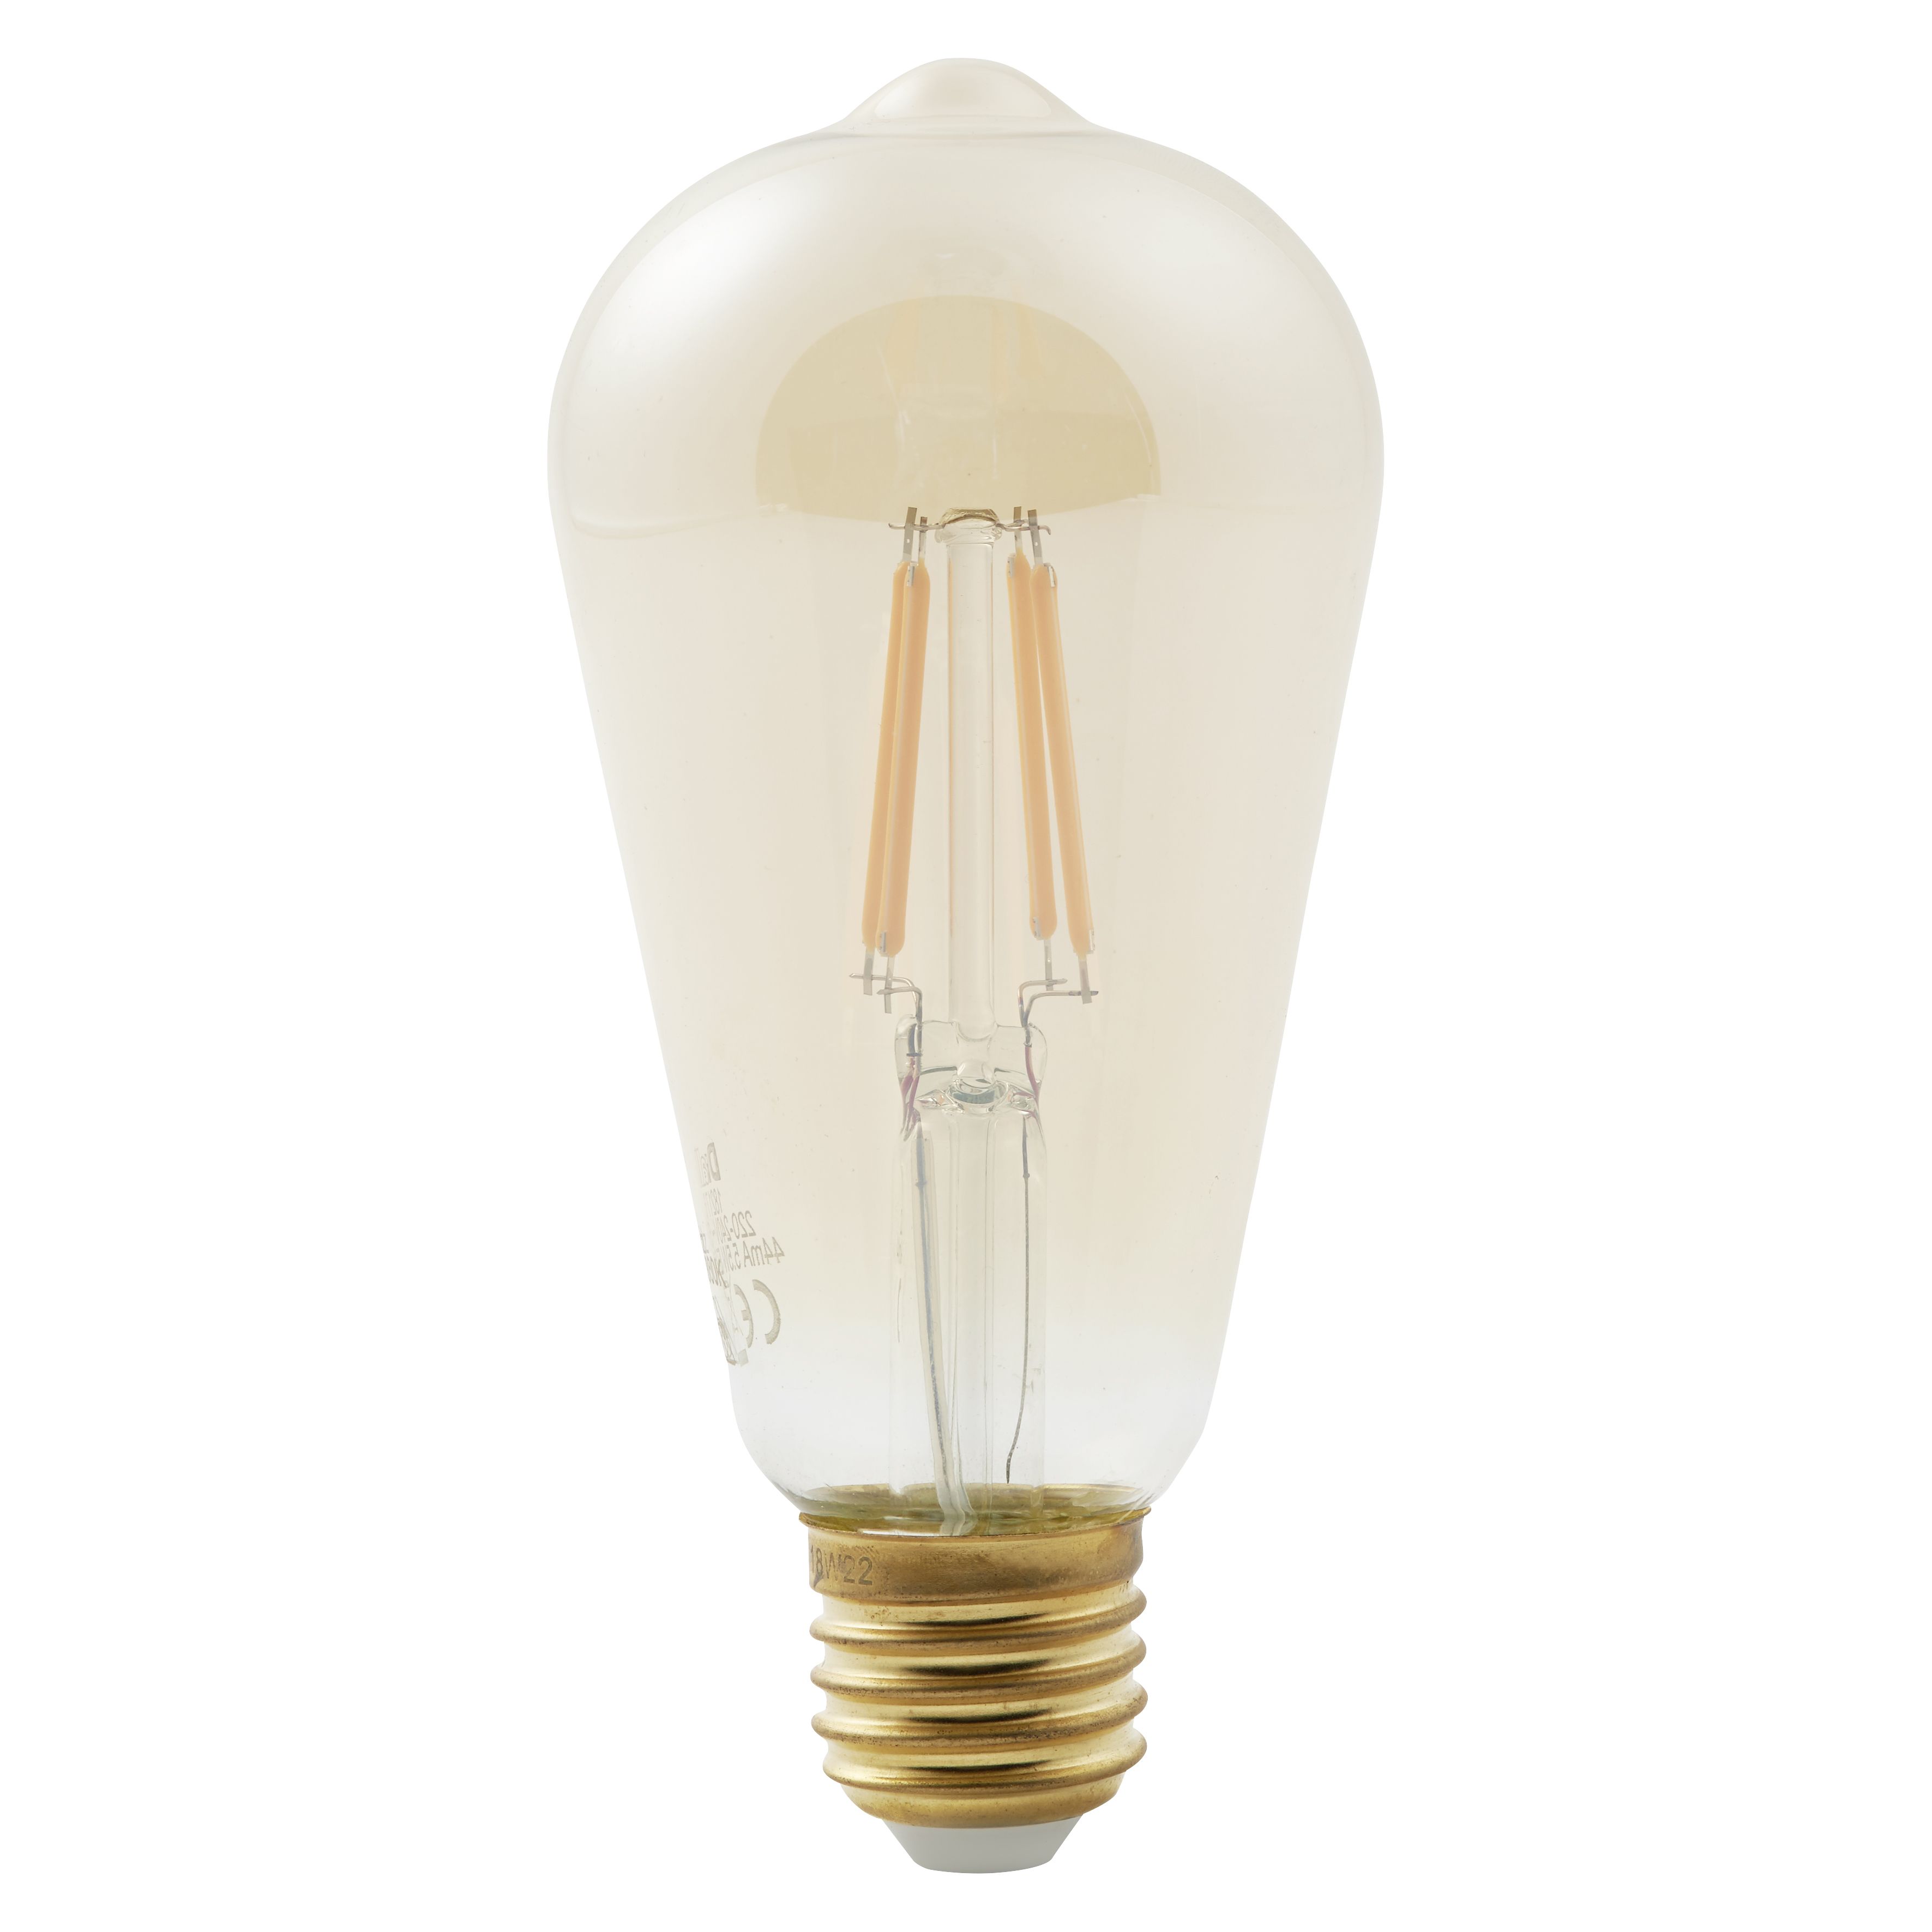 ANTELA Ampoule Connectée Wifi E27 5W ST64 Edison Vintage Lampe à Filament  LED Multicouleurs Blanc Chaud/Froid, Equivalent 45W, Compatible avec Alexa  / Google Home, Verre Ambré, 1PC